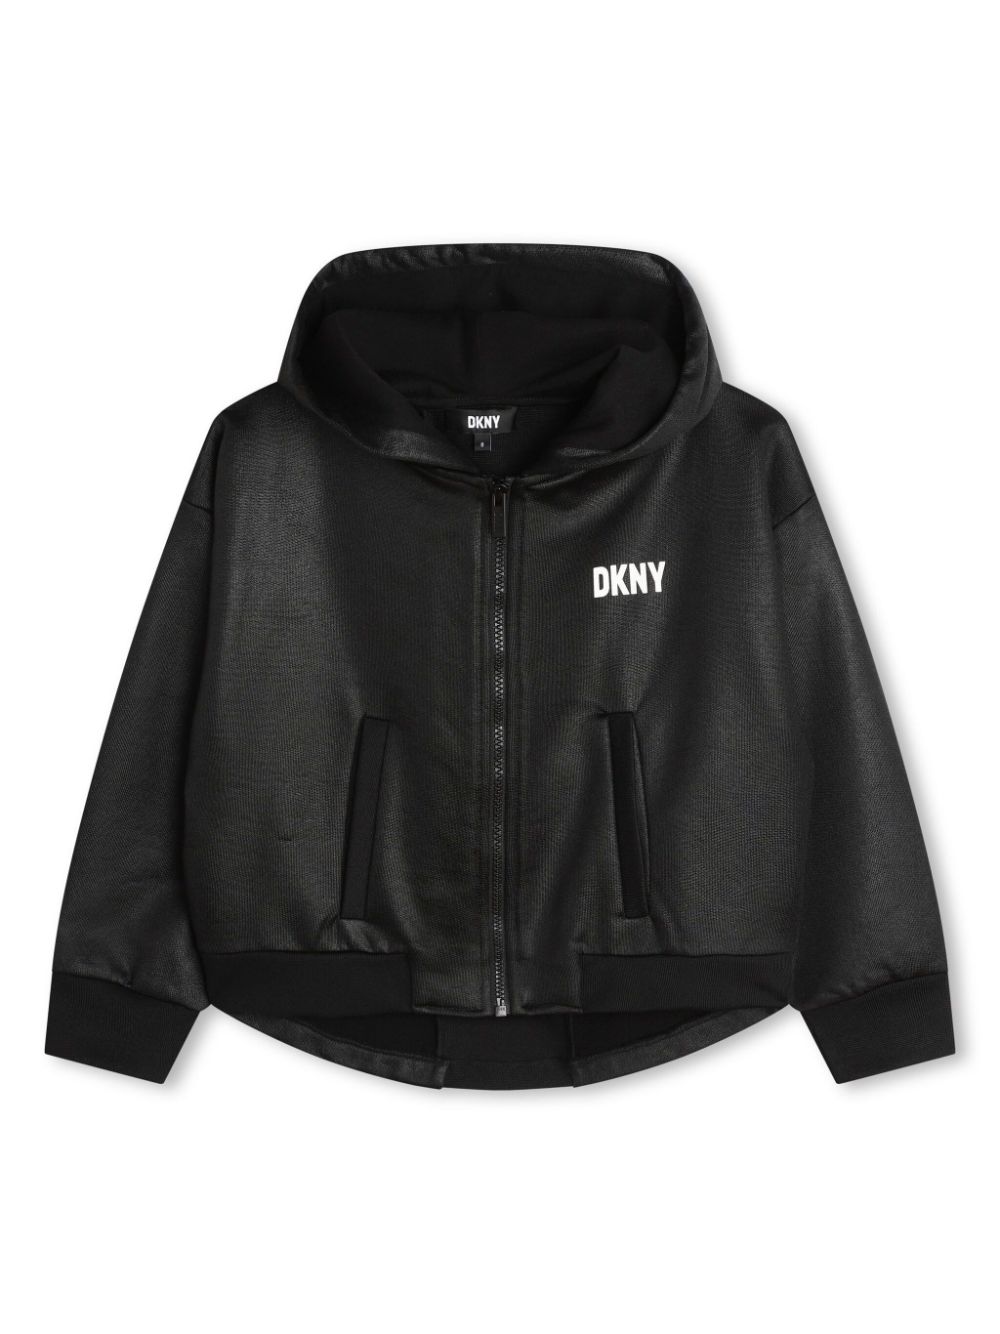 Dkny Kids' Logo-appliqué Hooded Jacket In Black